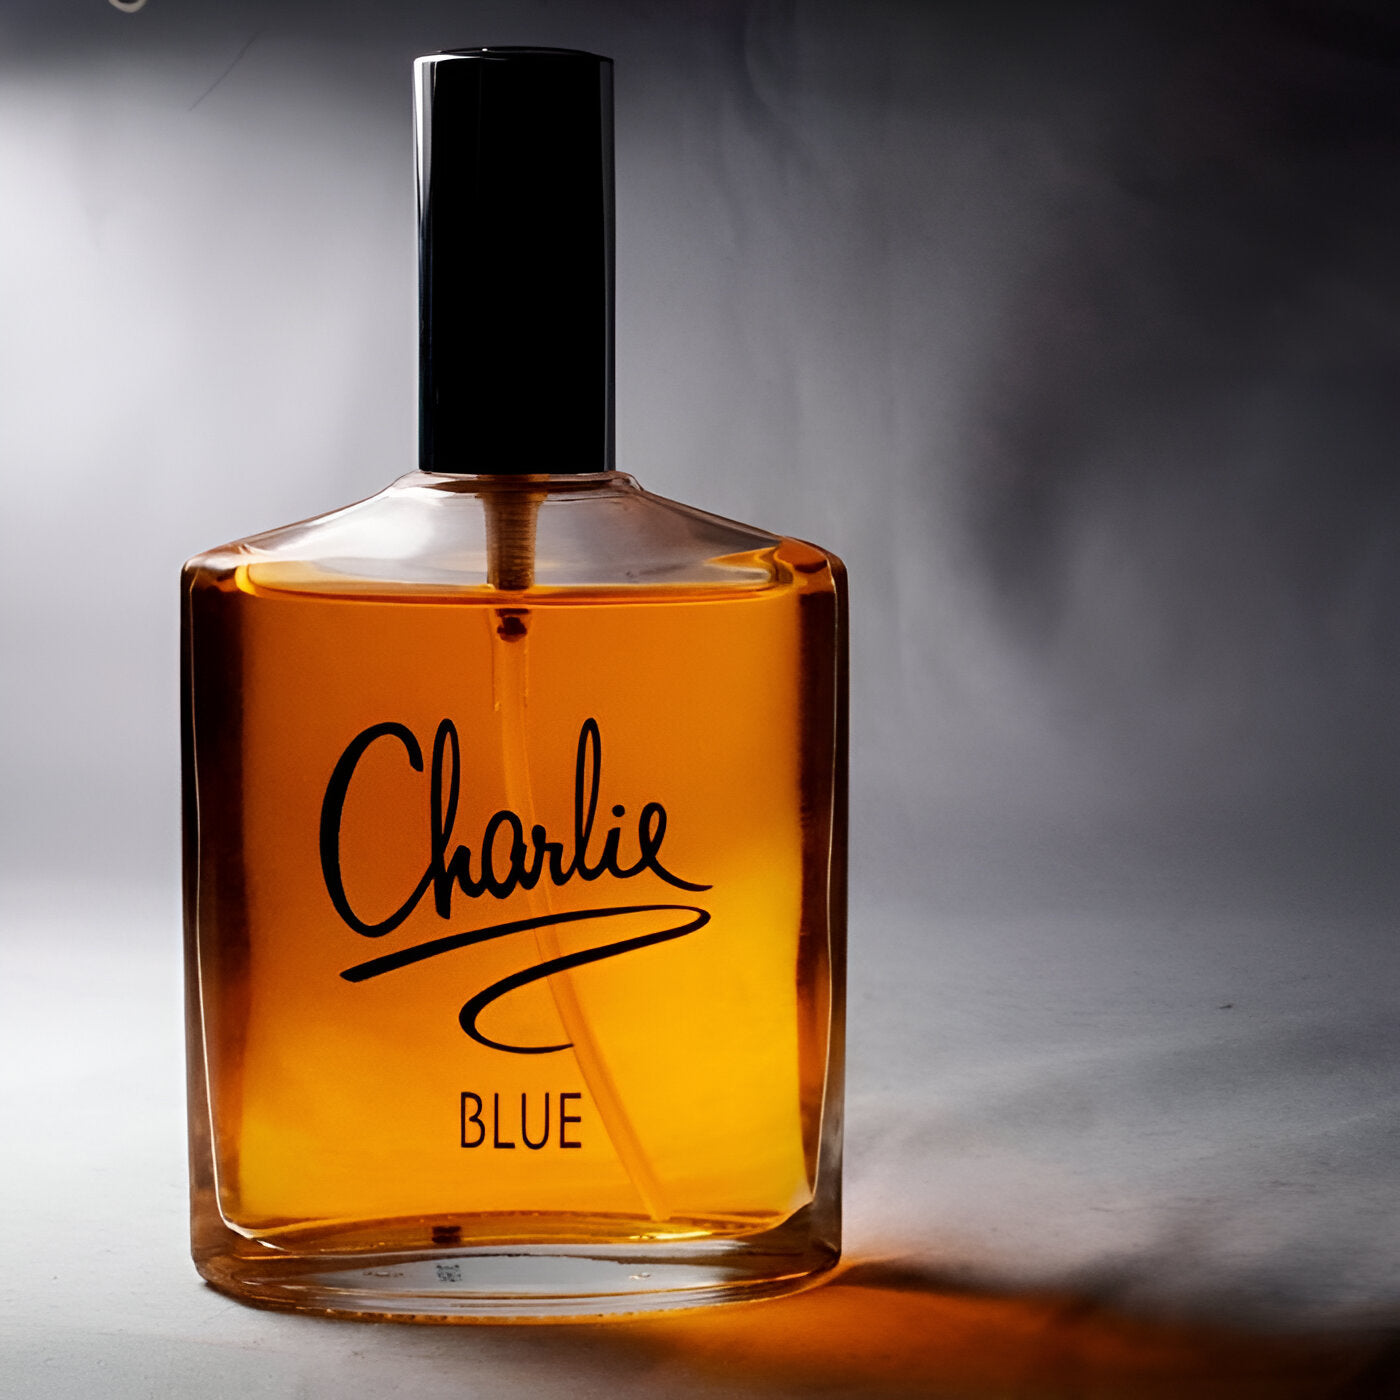 (Revlon) Charlie Blue Body spray 150ml with Charlie Gold Spray 150ml